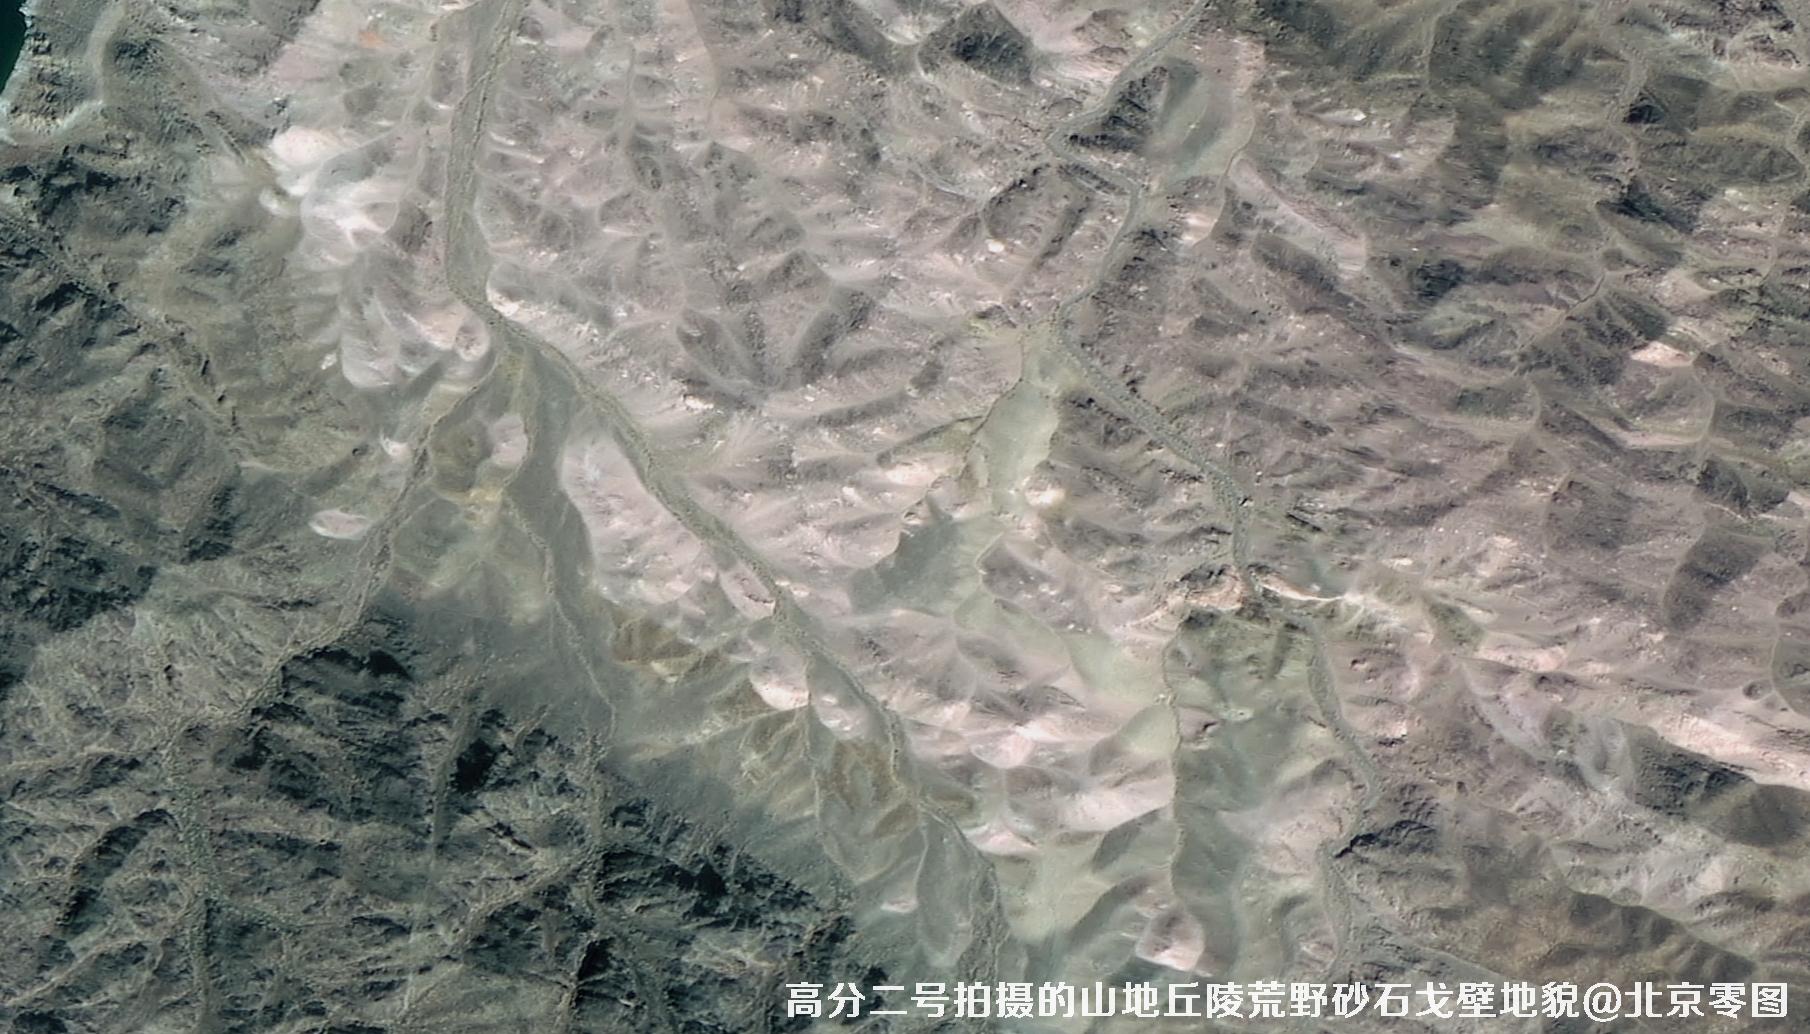 高分二号拍摄的山地丘陵荒野砂石戈壁积雪地貌卫星图